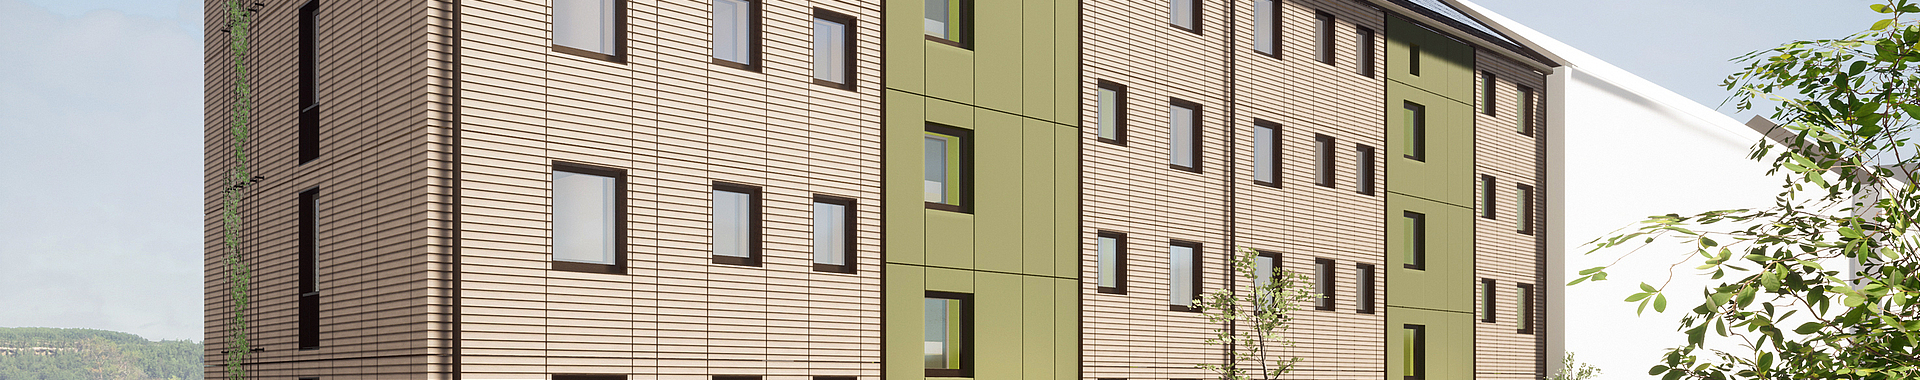 Visualisierung des sanierten Gebäudes mit braunen Fassadenelementen und Photovoltaik-Elementen auf dem Dach.